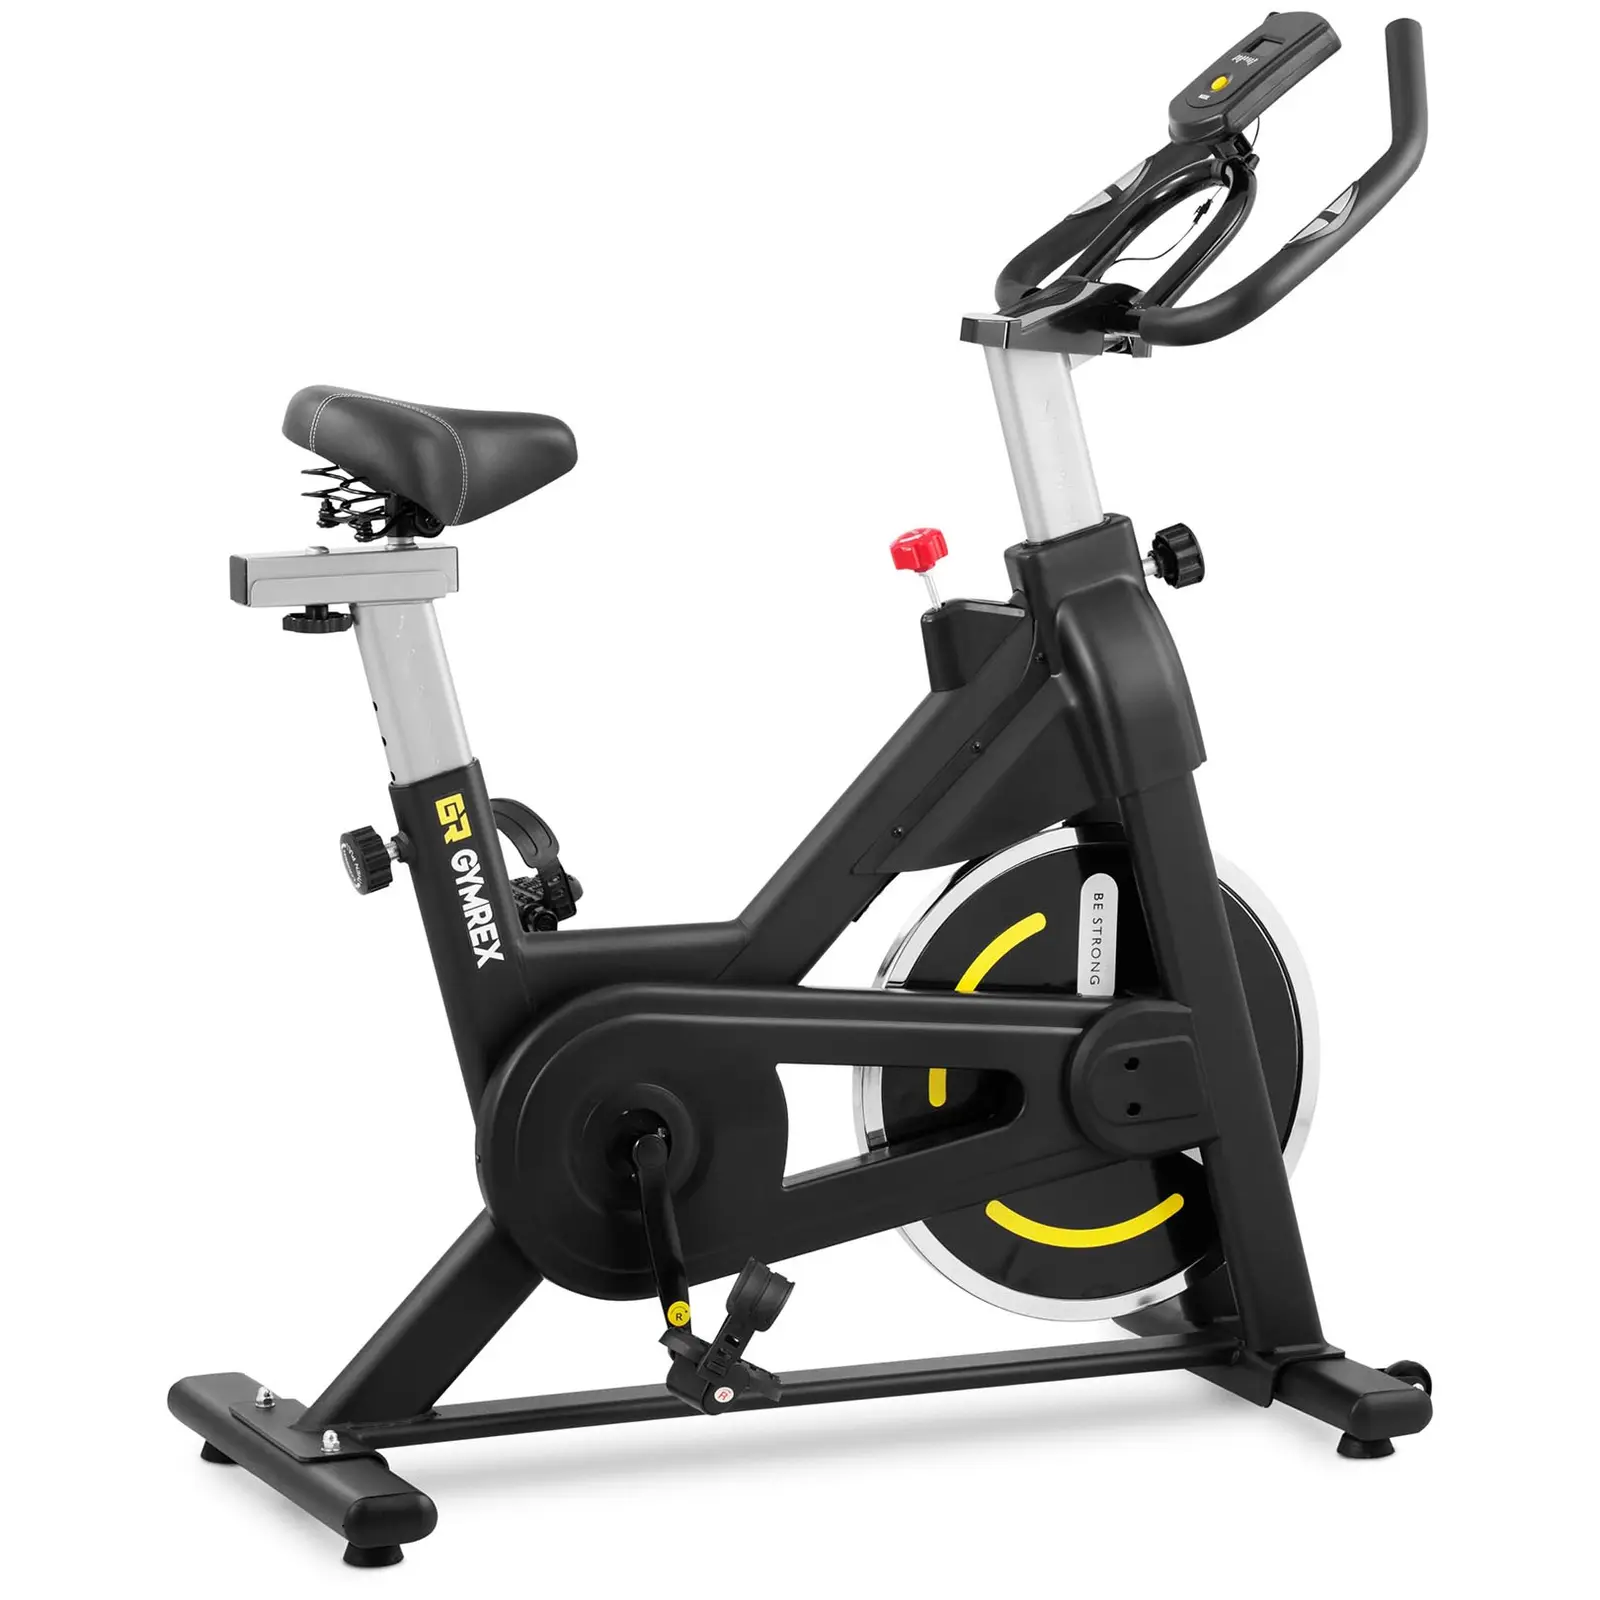 Motionscykel - Svänghjul 8 kg - Upp till 100 kg - LCD